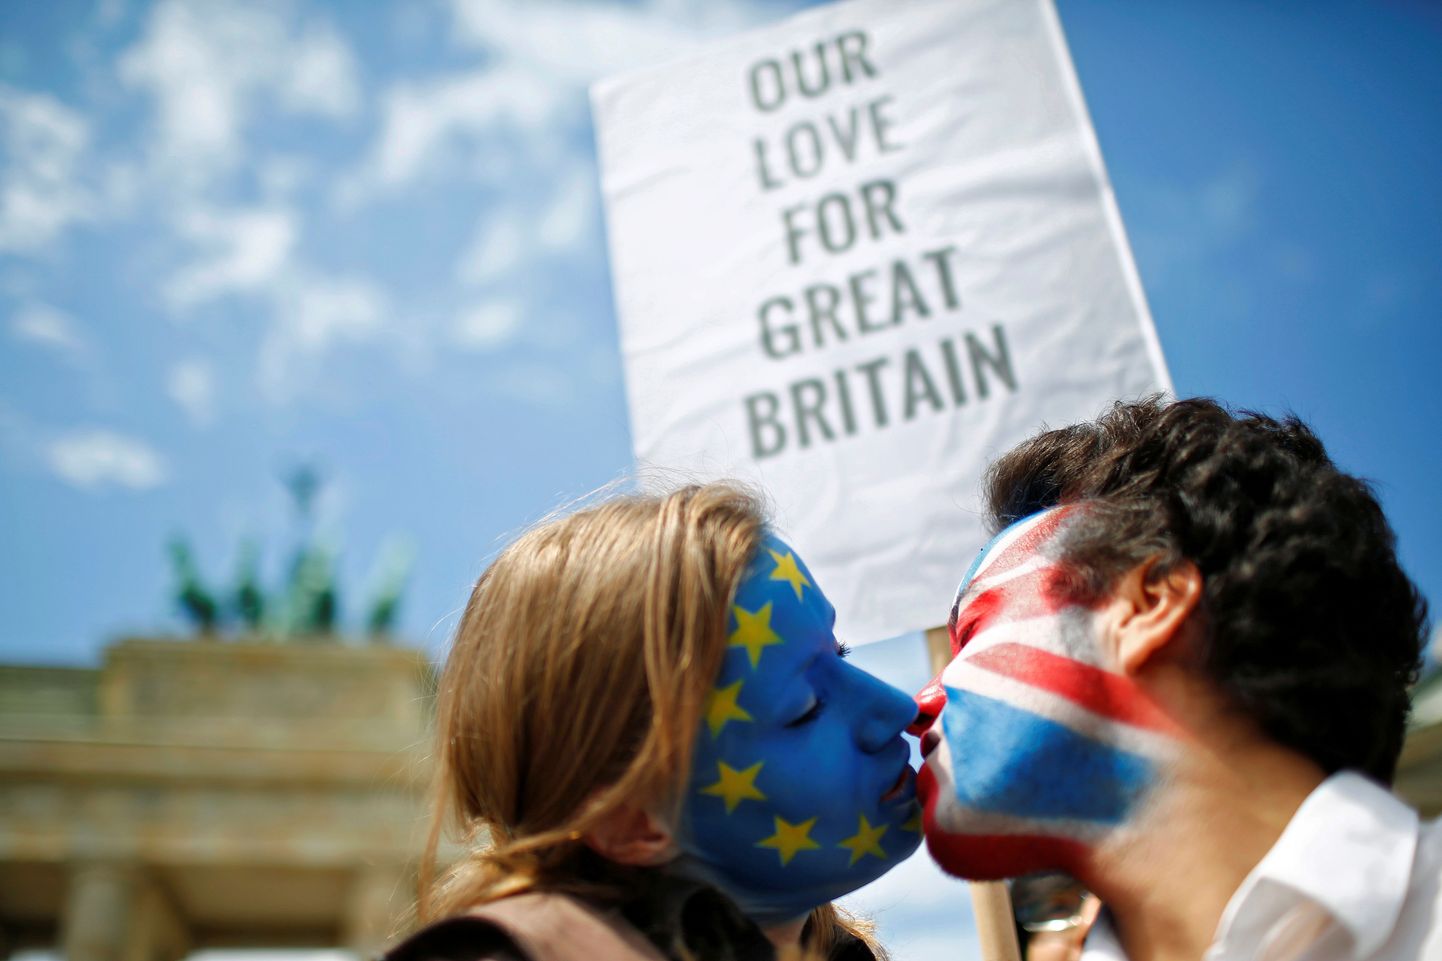 Kaks Suurbritannia Euroopa Liitu jäämise pooldajat, kellest ühele näole maalitud Euroopa Liidu lipp ja teisele Suurbritannia riigilipp, möödunud pühapäeval Berliinis Brandenburgi värava juures Brexiti vastu protestijate meeleavaldusel.